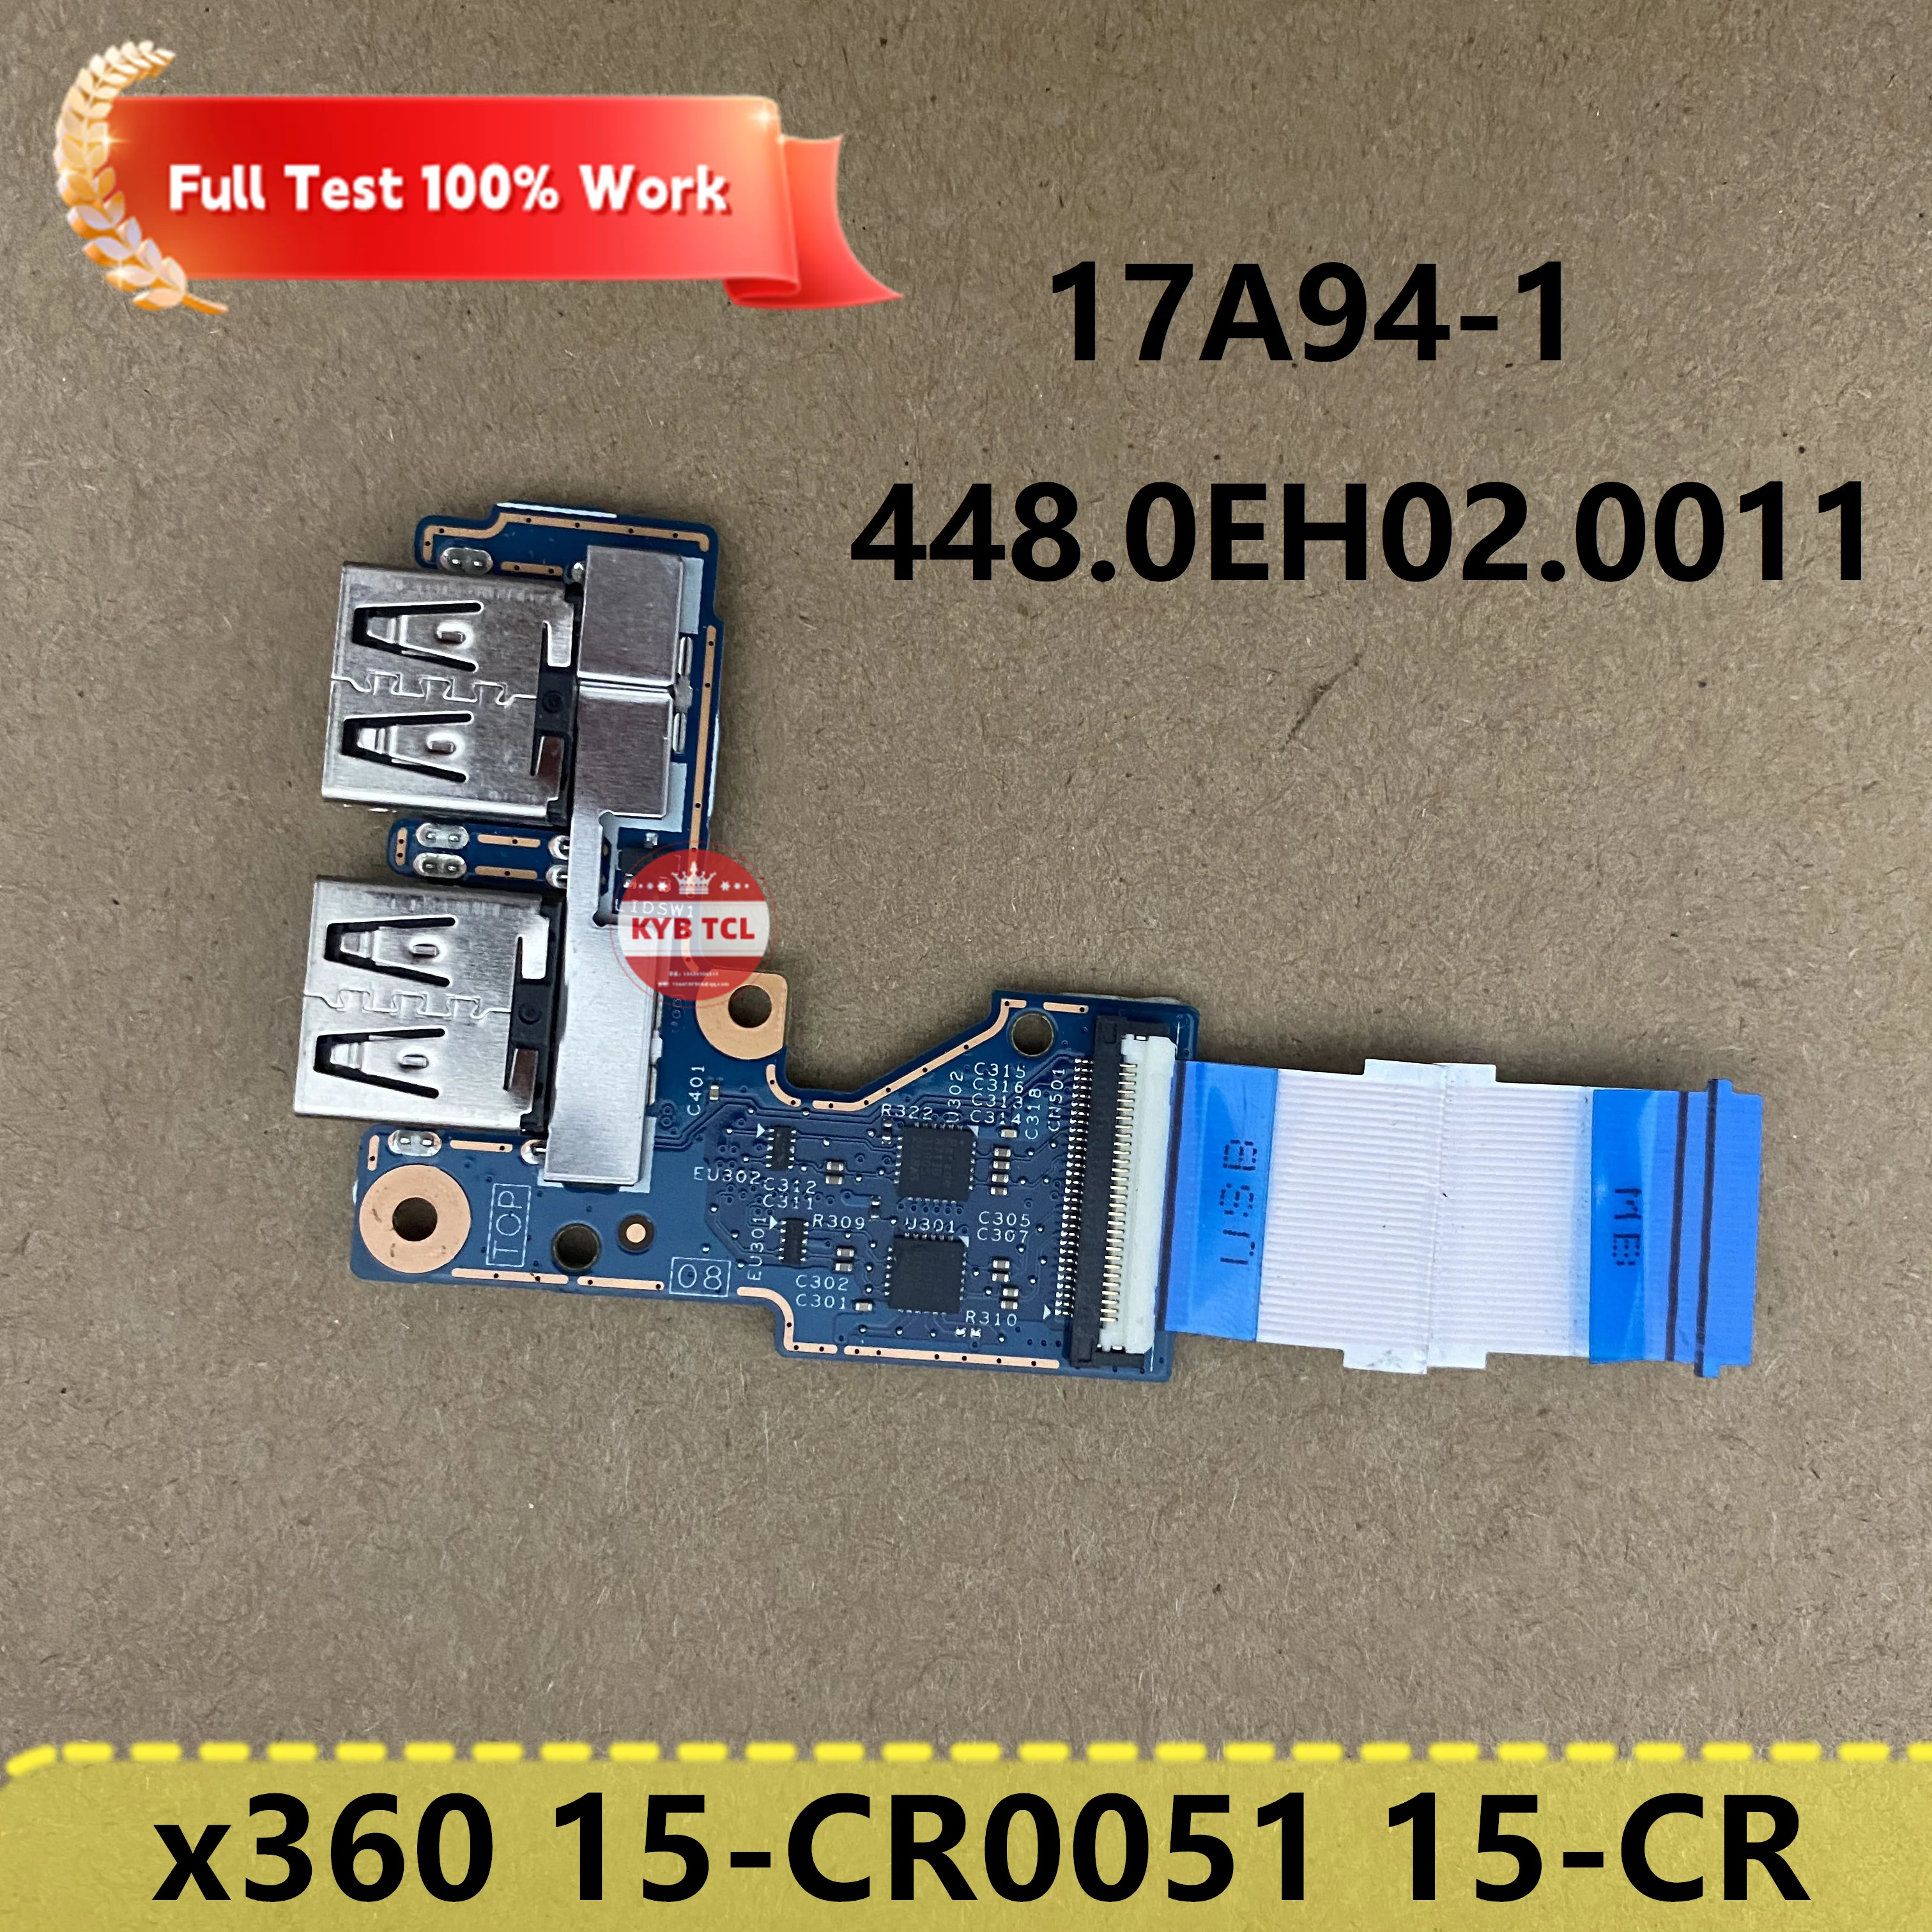 

Подлинный HP павильон x360 15-CR0051 15-CR 15.6" ноутбук USB Board W/ Cable 448.0EH02.0011 17A94-1 450.0EH02.0001 ноутбук оригинальный